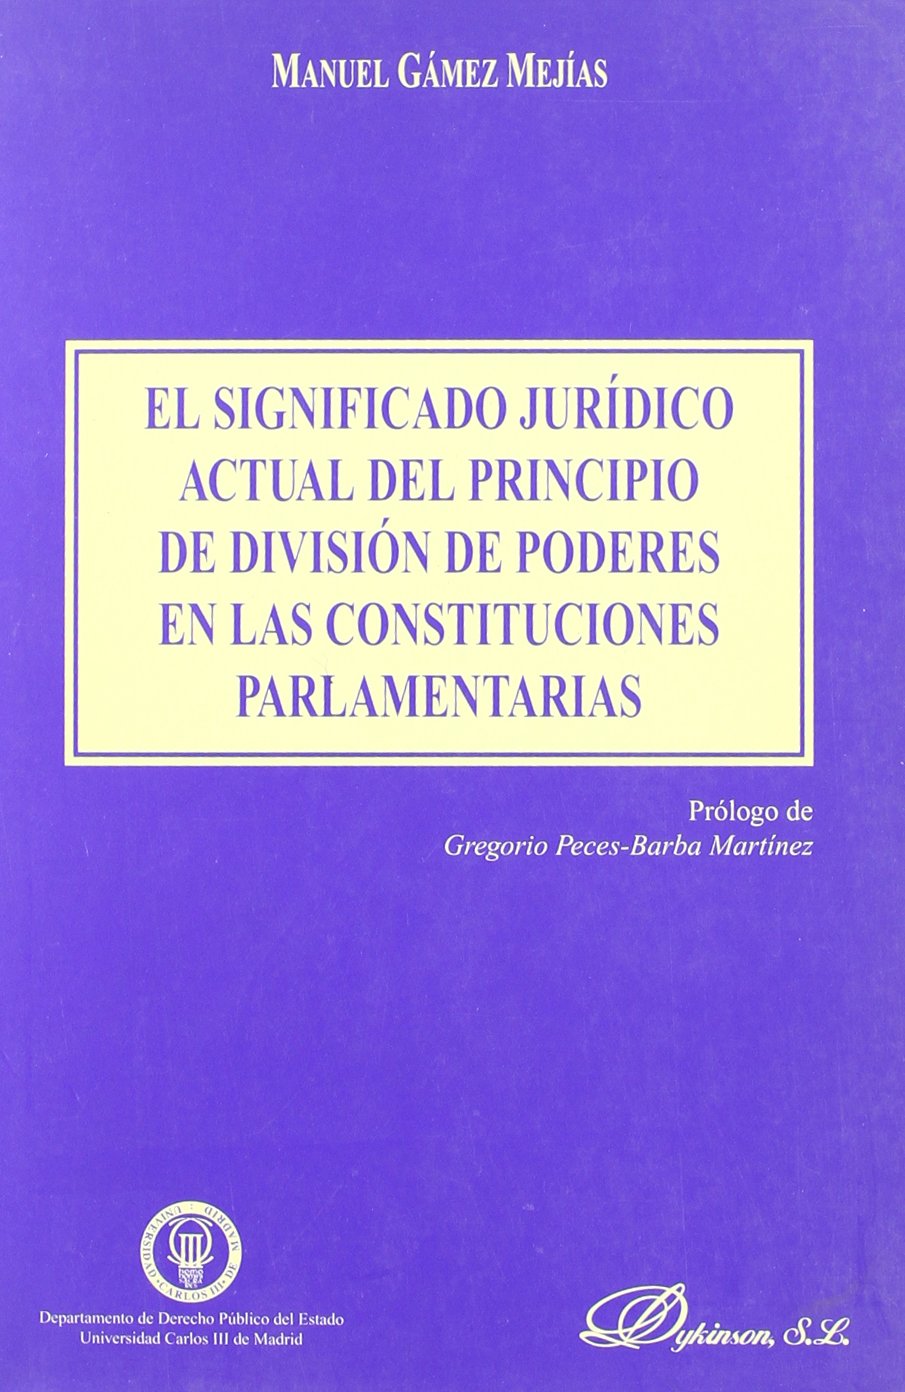 El significado jurídico actual del principio de división de poderes en las constituciones parlamentarias